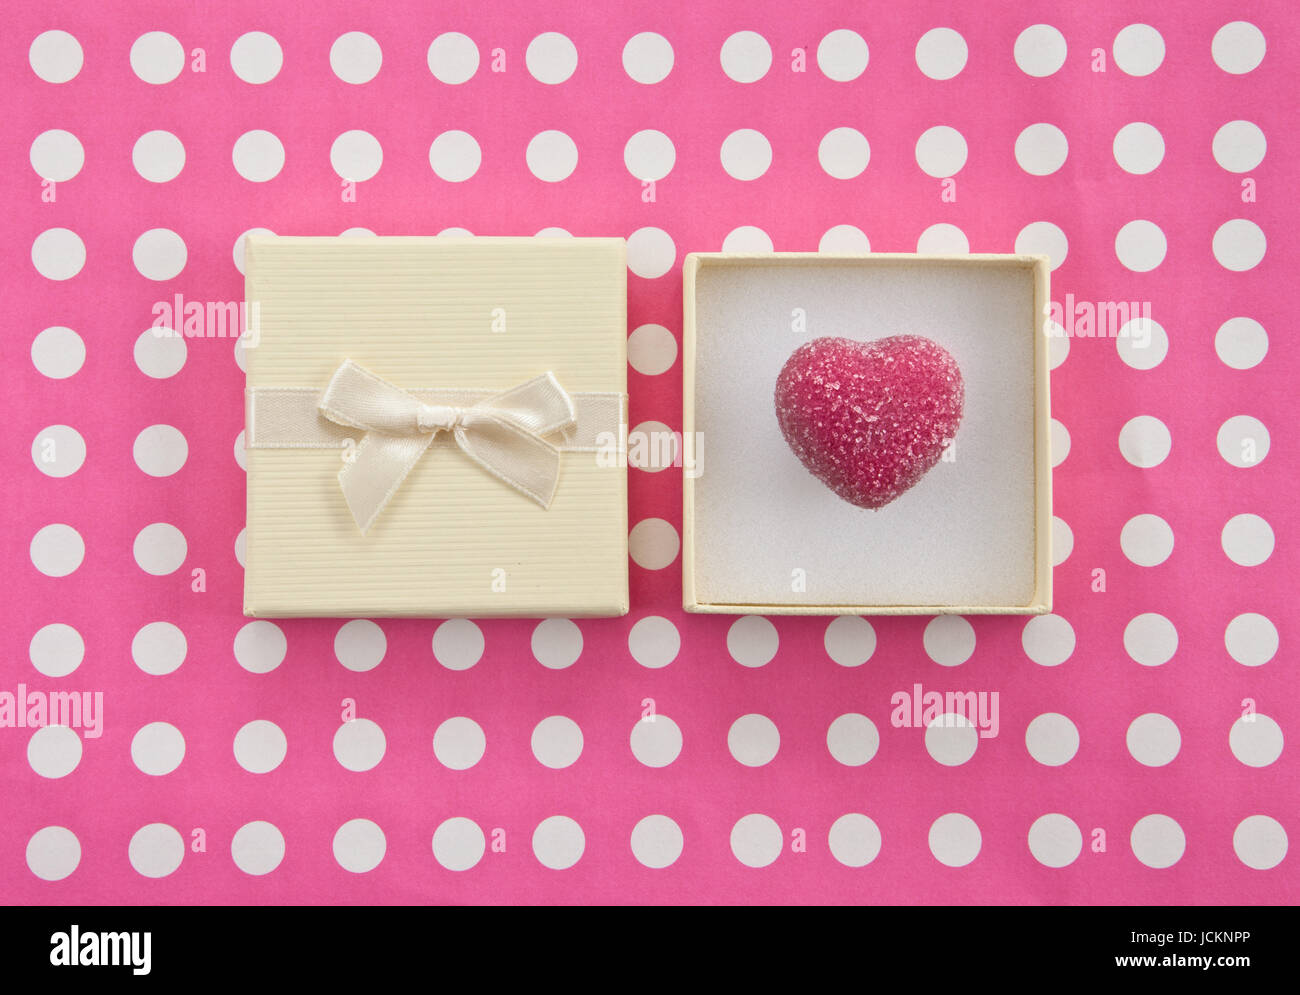 Herzfoermige Praline, Trueffel in Geschenkbox zum Valentinstag Stock Photo